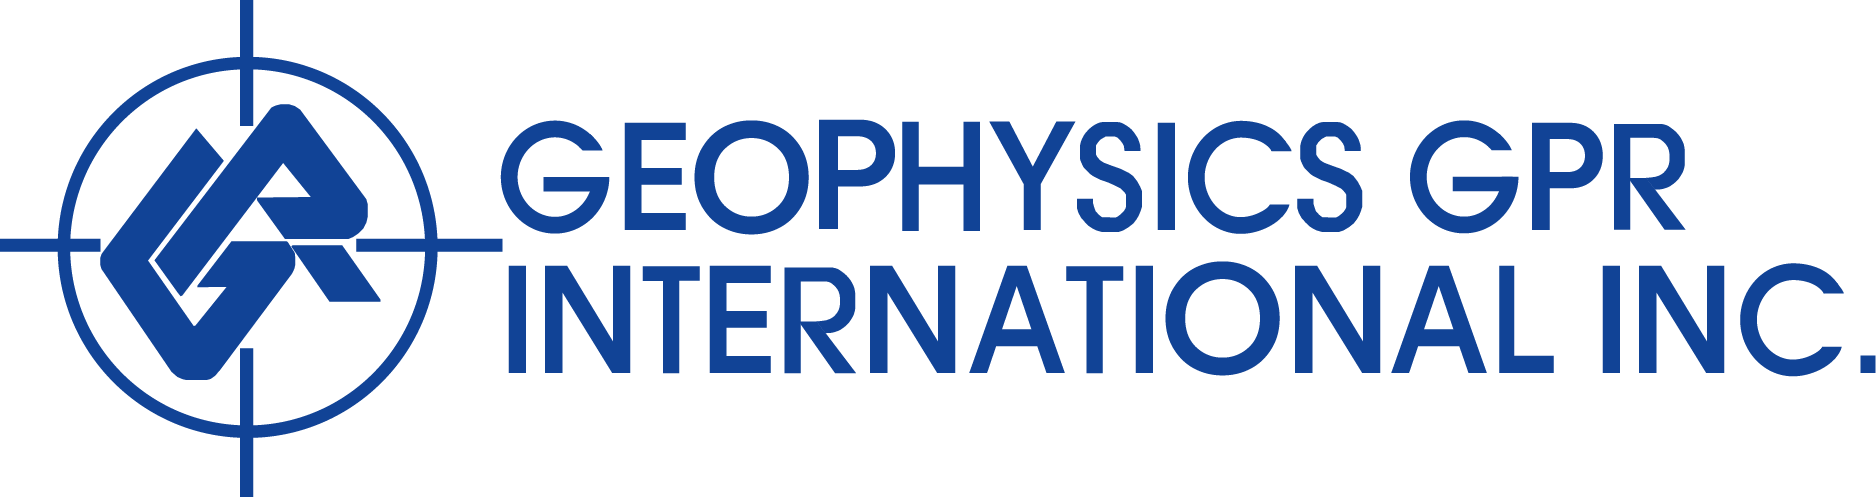 Geophysics GPR International Inc